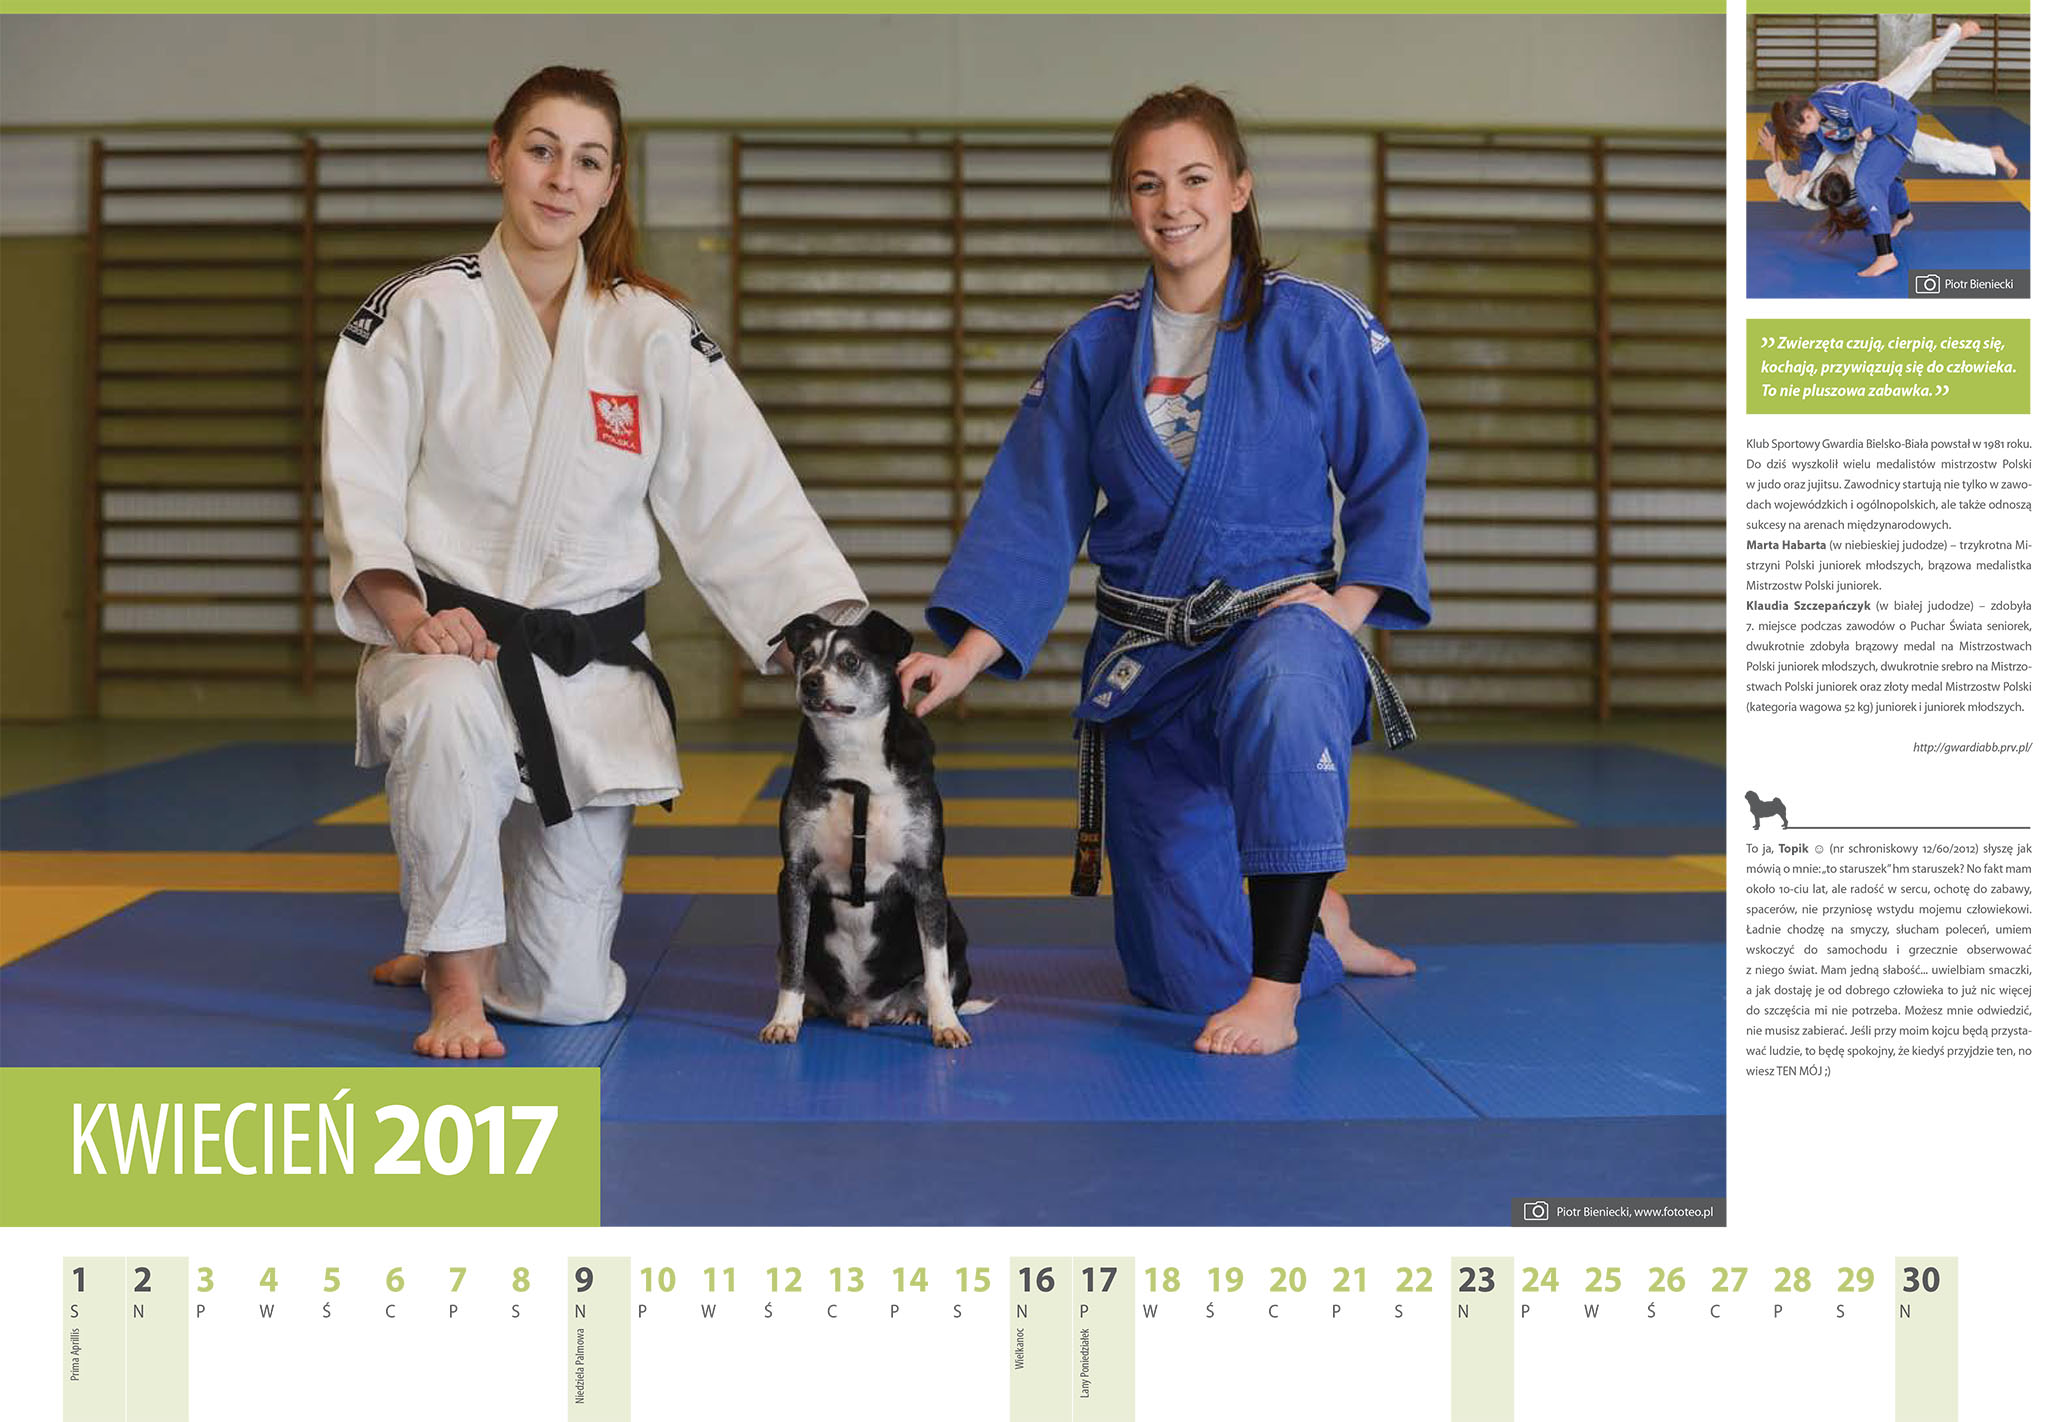 Kalendarz 2017 kwiecien. Judoczki Marta Habarta i Klaudia Szczepanczyk